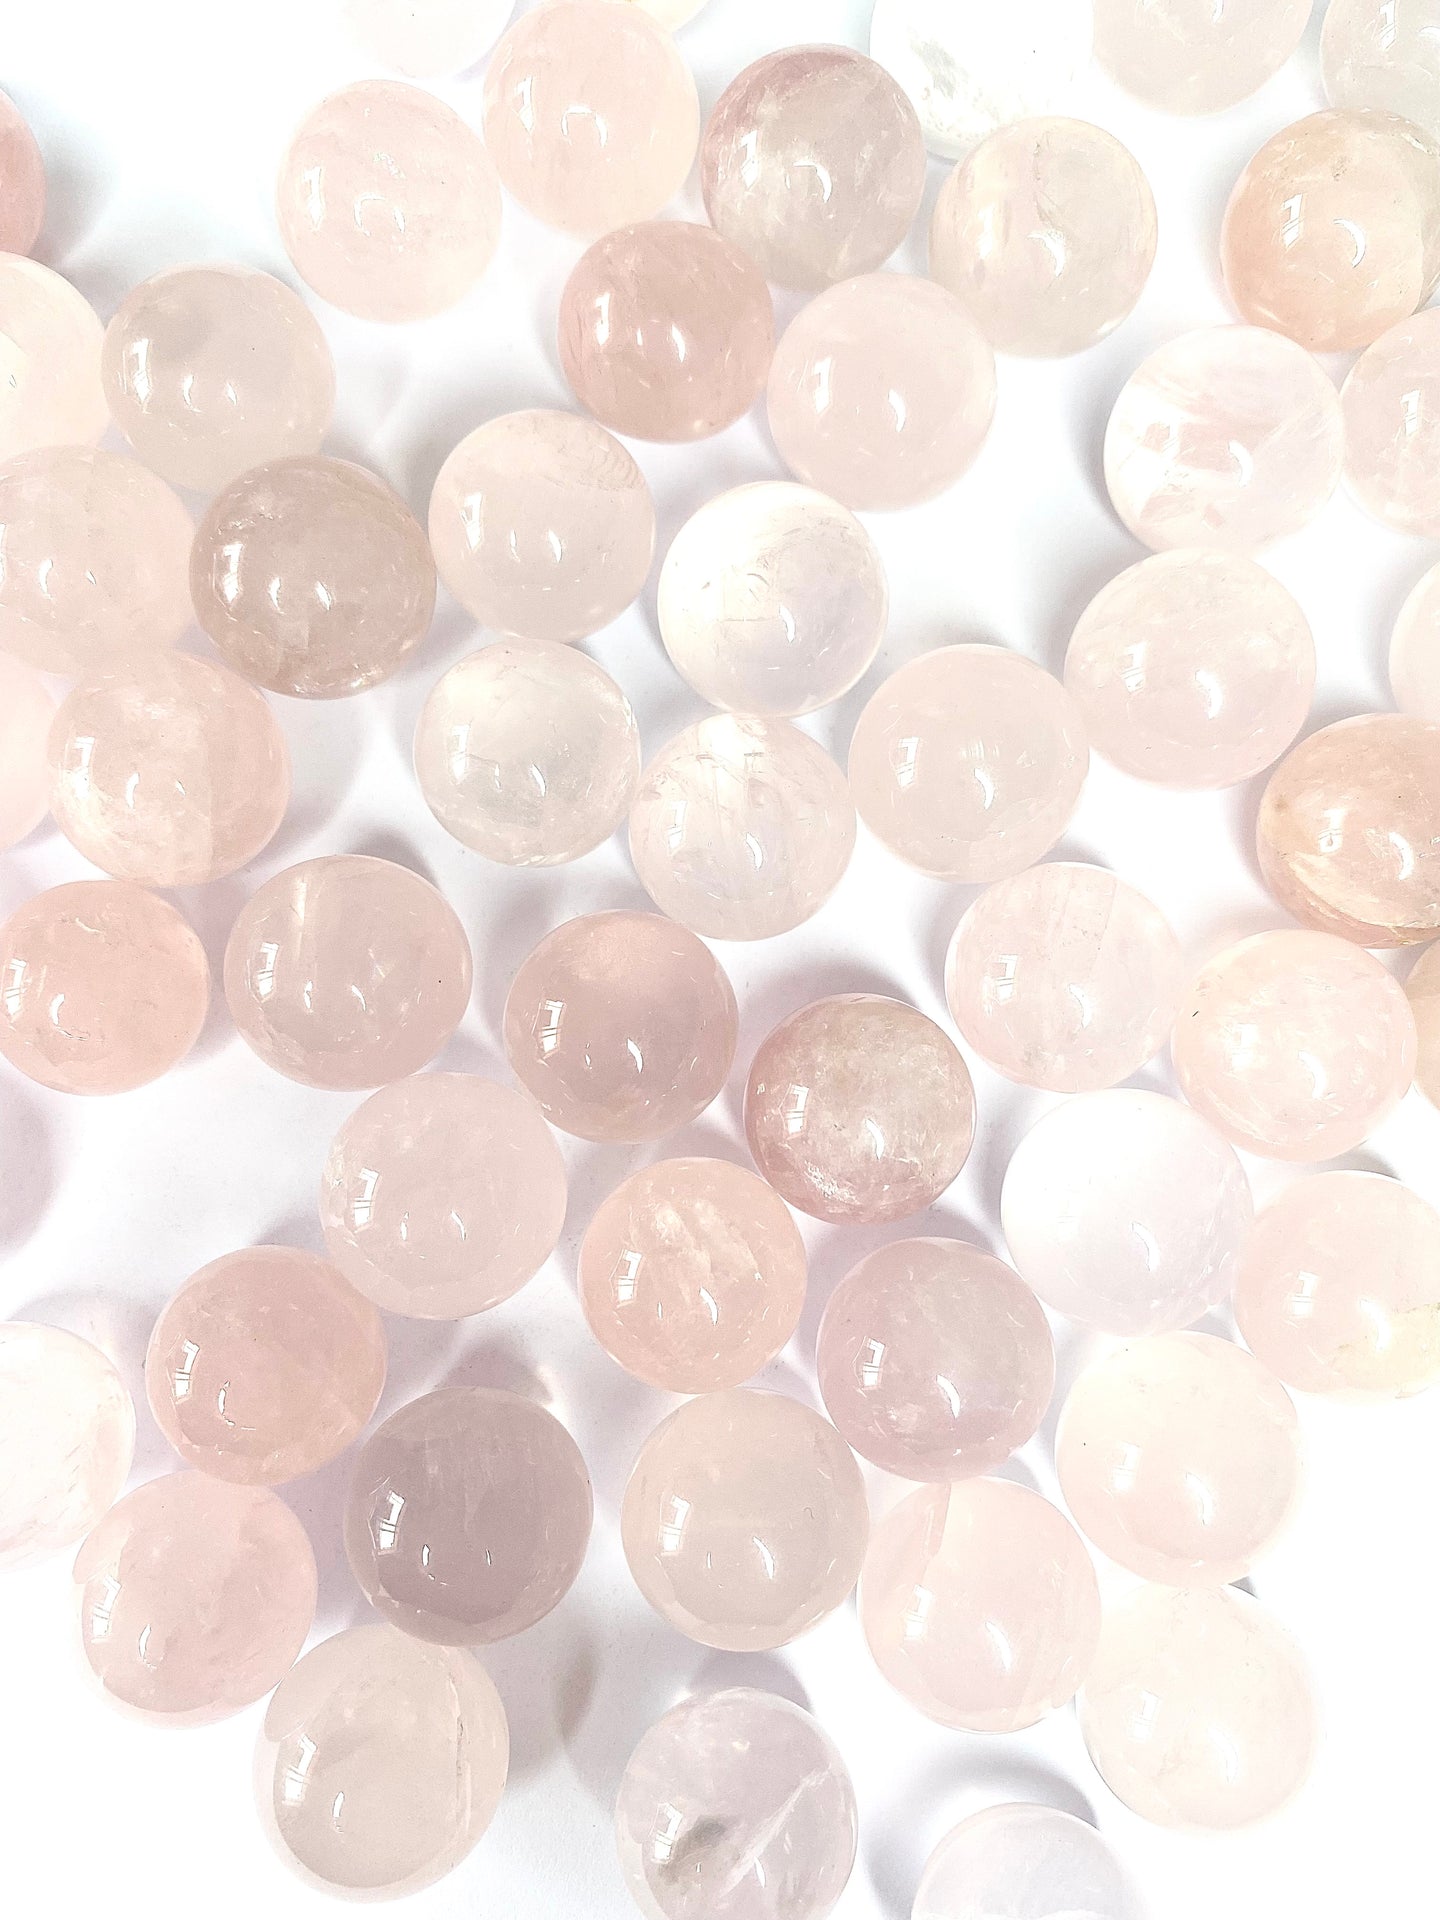 Rose Quartz mini spheres